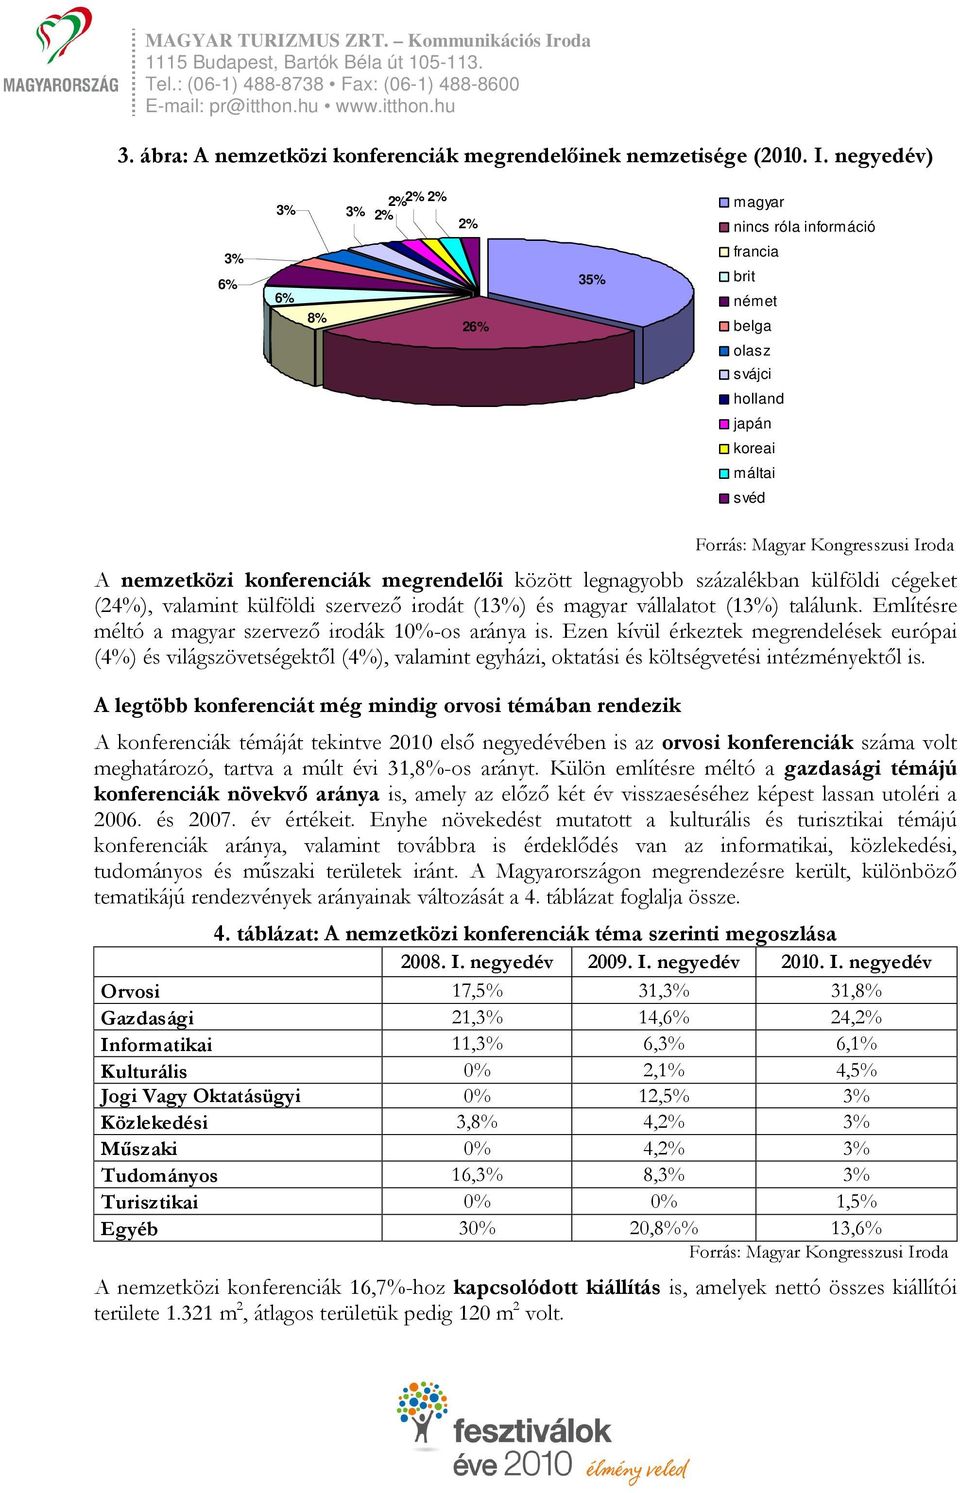 legnagyobb százalékban külföldi cégeket (24%), valamint külföldi szervező irodát (13%) és magyar vállalatot (13%) találunk. Említésre méltó a magyar szervező irodák 10%-os aránya is.